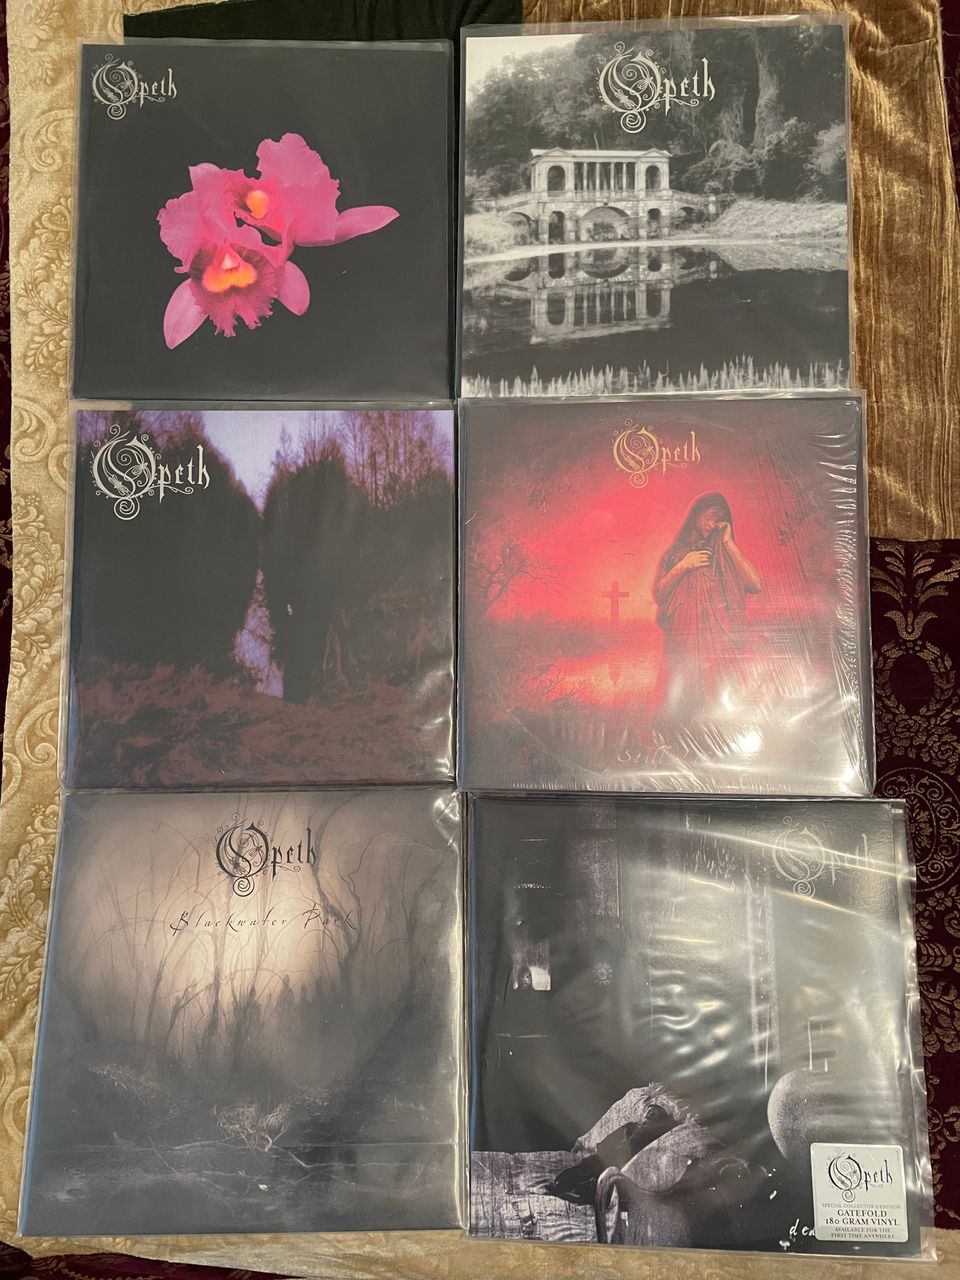 Upea kokoelma Opethin progemetallia LP:nä